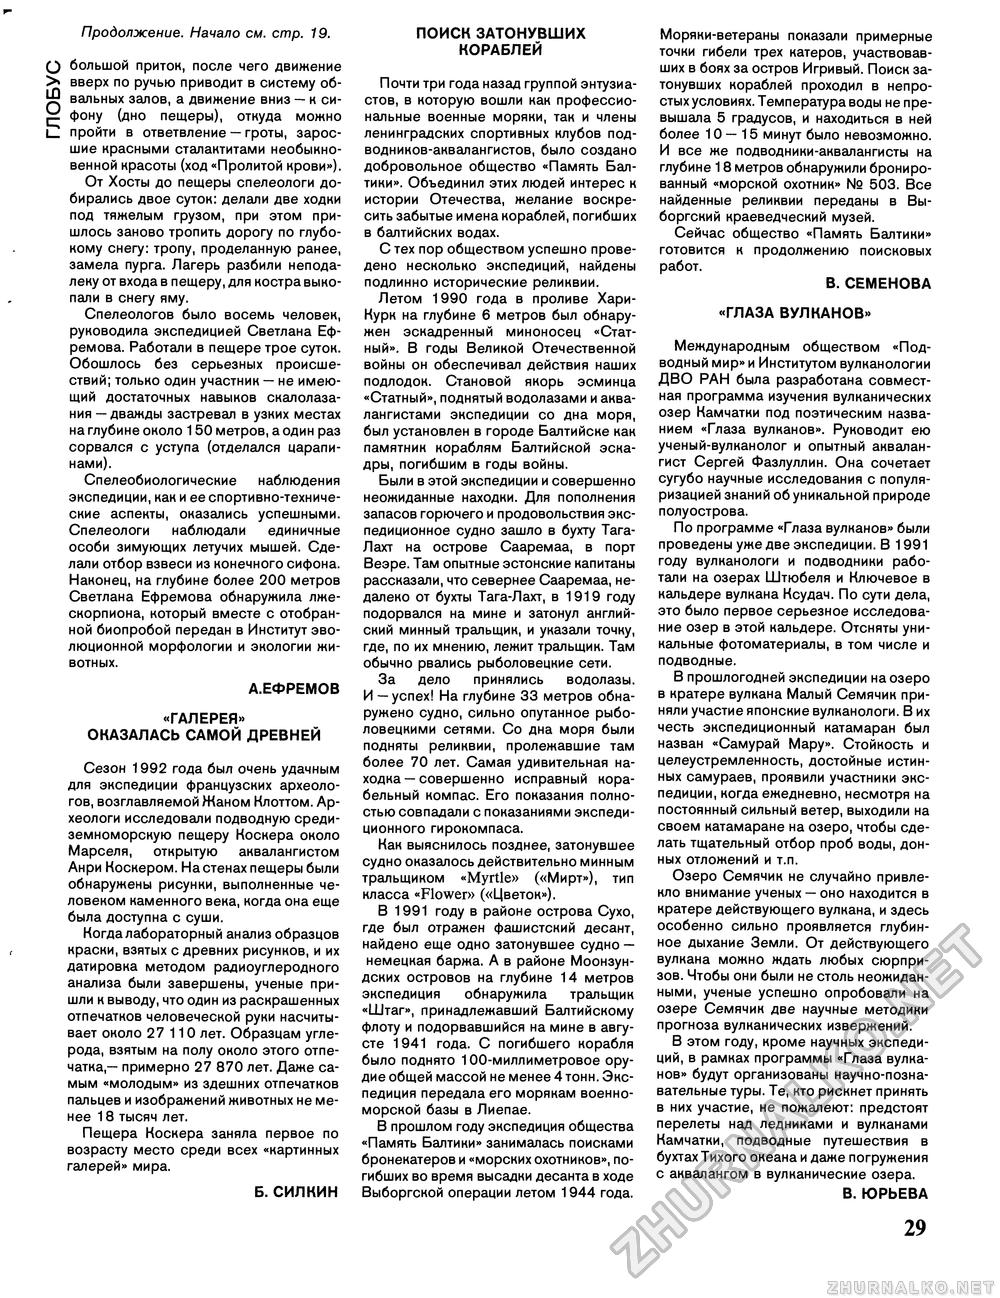 Вокруг света 1993-04, страница 31